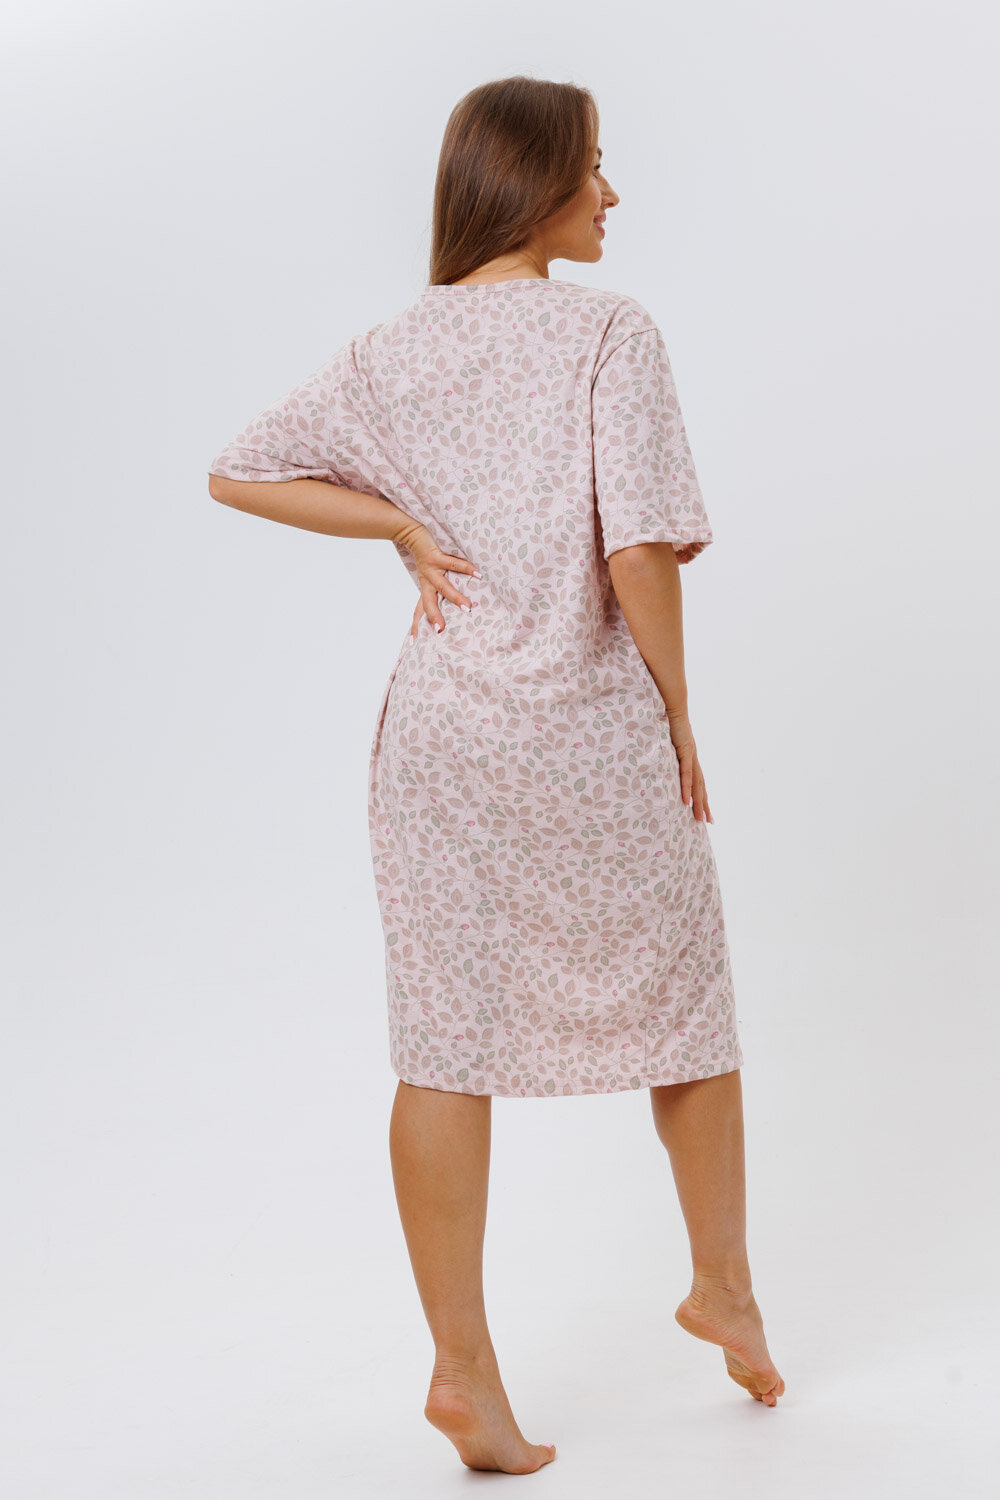 Сорочка Modellini, размер 58, розовый, бежевый - фотография № 8